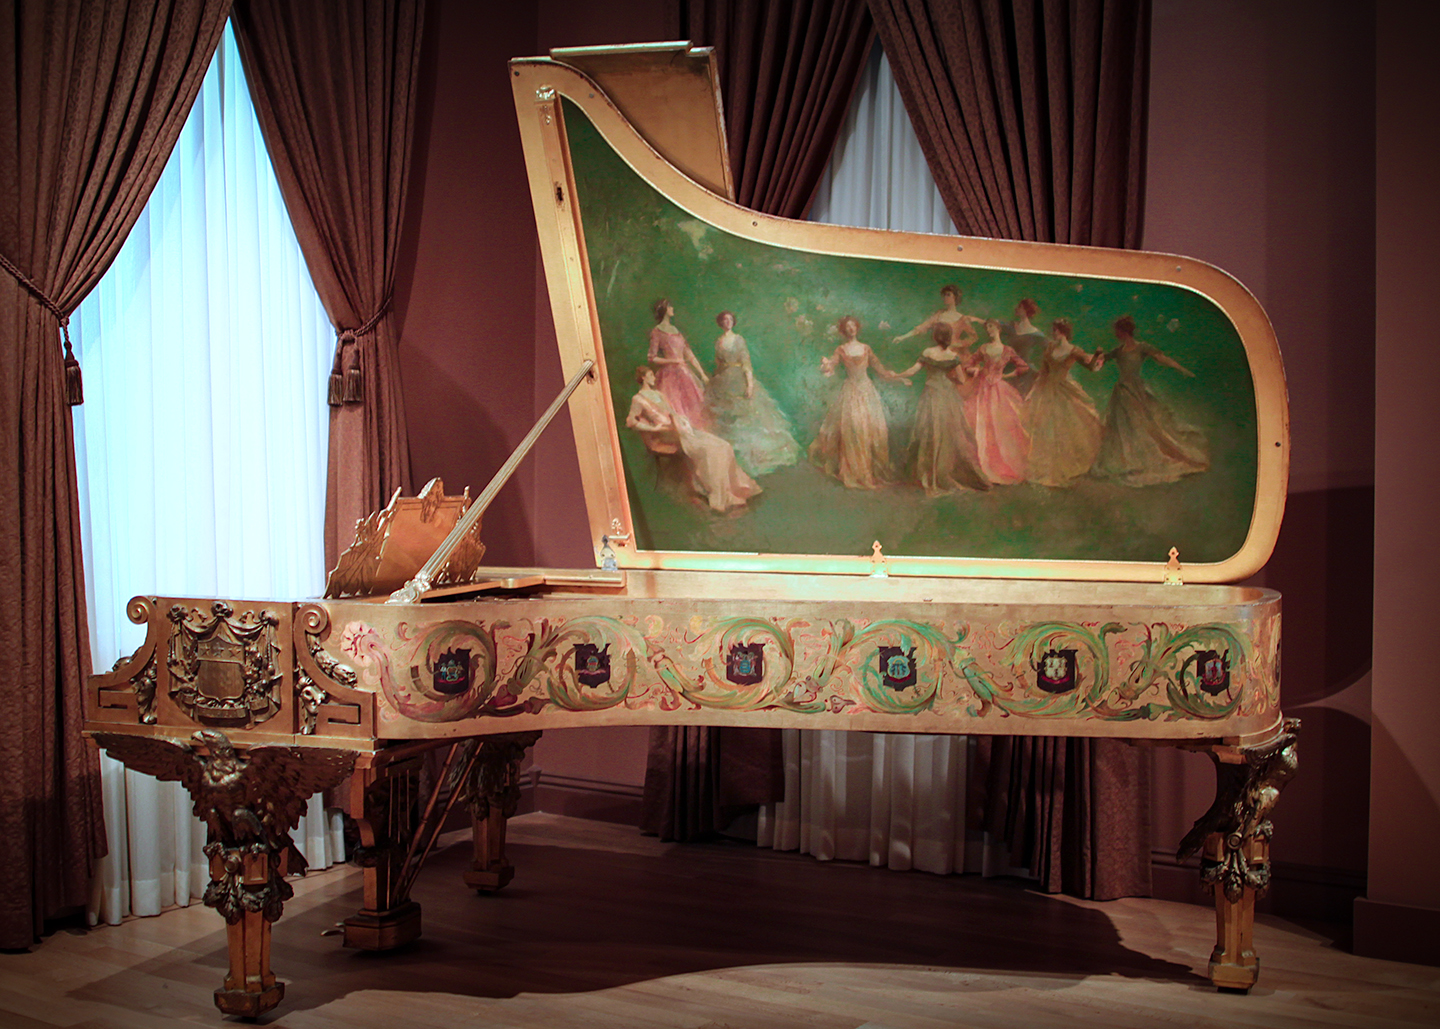 Cây dương cầm đầu tiên của Tòa Bạch Ốc do Hãng Steinway & Sons sản xuất có bức tranh “America Receiving the Nine Muses” (Mỹ Quốc Chào Đón Chín Nữ Thần Muse) của họa sỹ Thomas Wilmer Dewing bên trong nắp đàn. (Ảnh: Được Mr.TinMD/CC BY-ND 2.0 chỉnh sửa màu sắc)